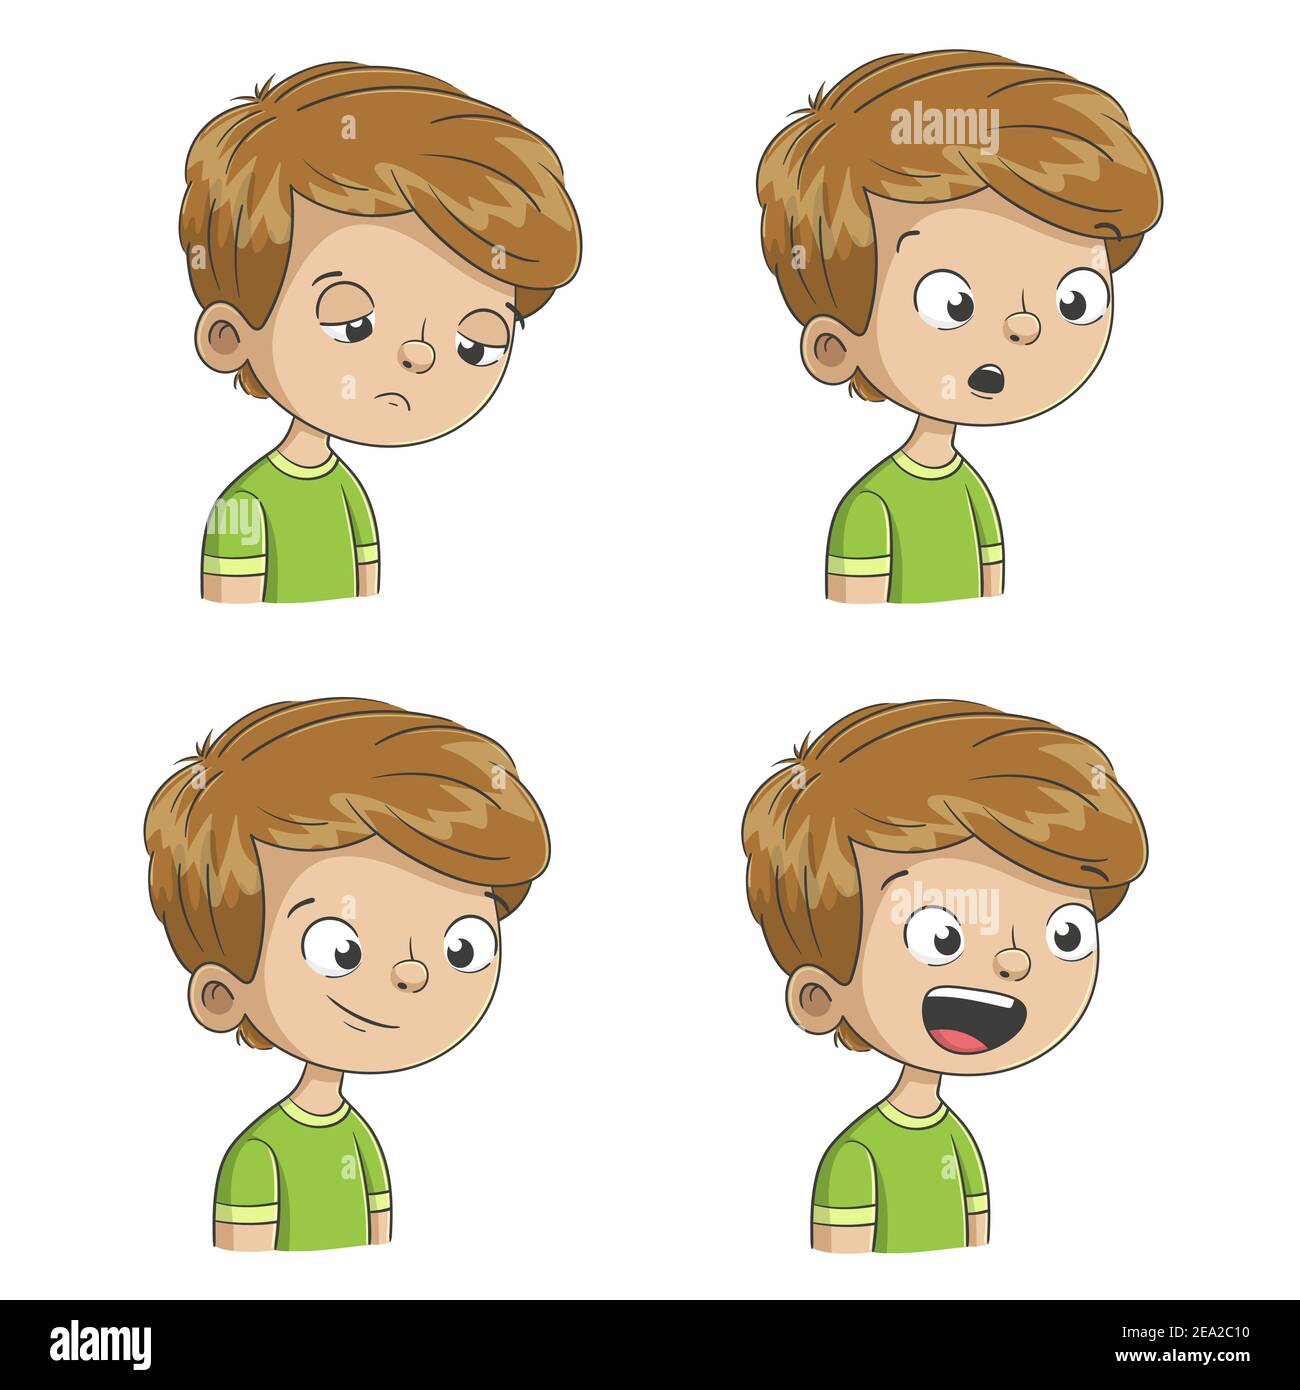 Boy zeigt vier Emotionen, traurig, überrascht, zufrieden, glücklich. Handgezeichnete Vektorgrafik mit separaten Ebenen. Stock Vektor